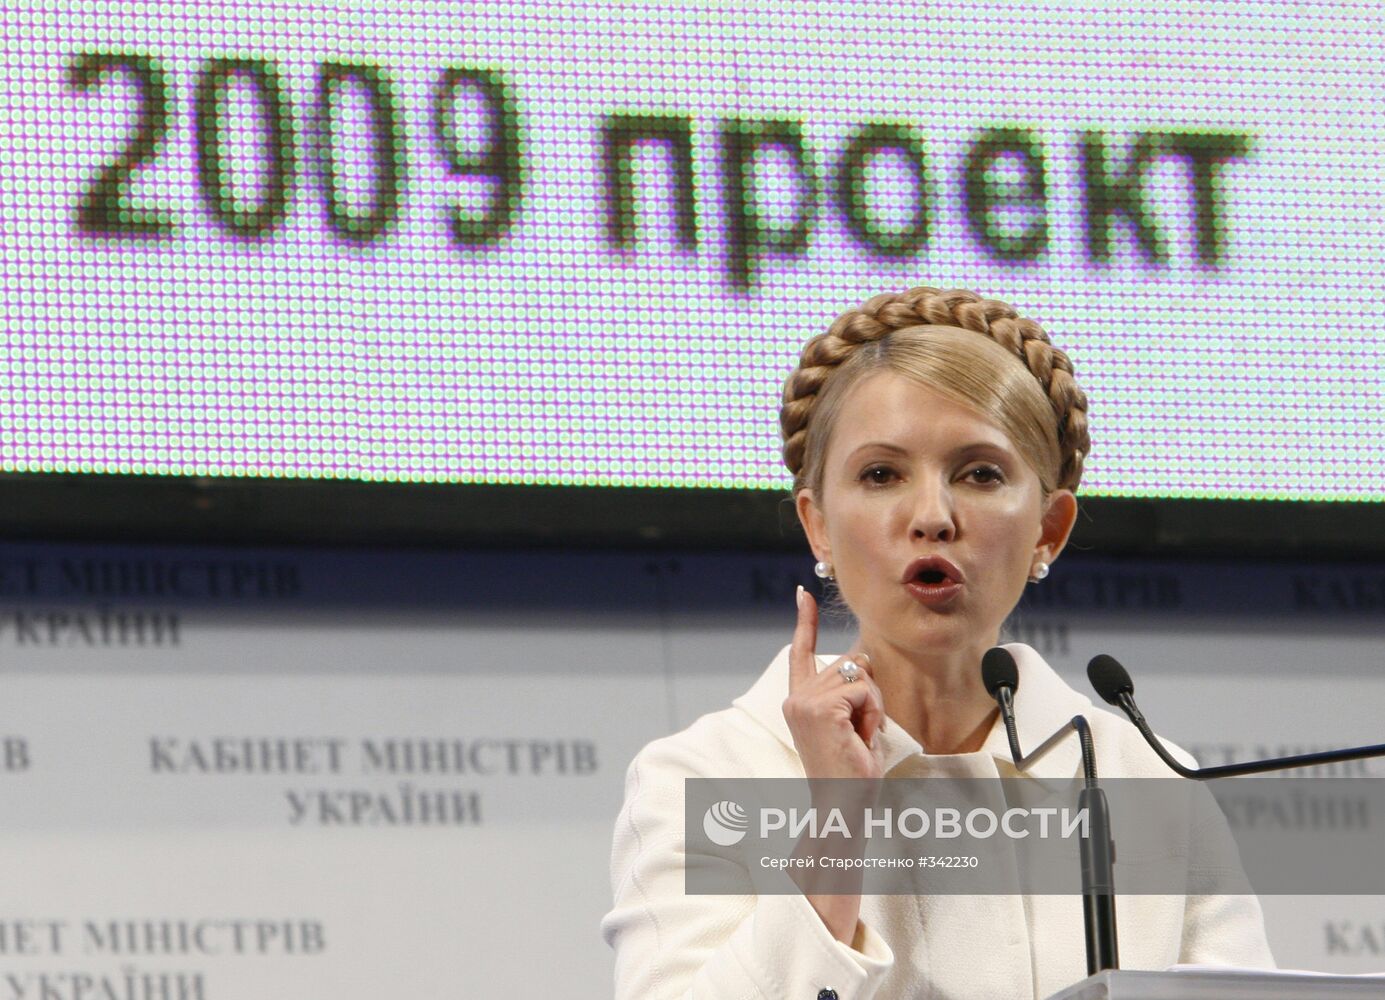 Презентация госбюджета Украины на 2009 год